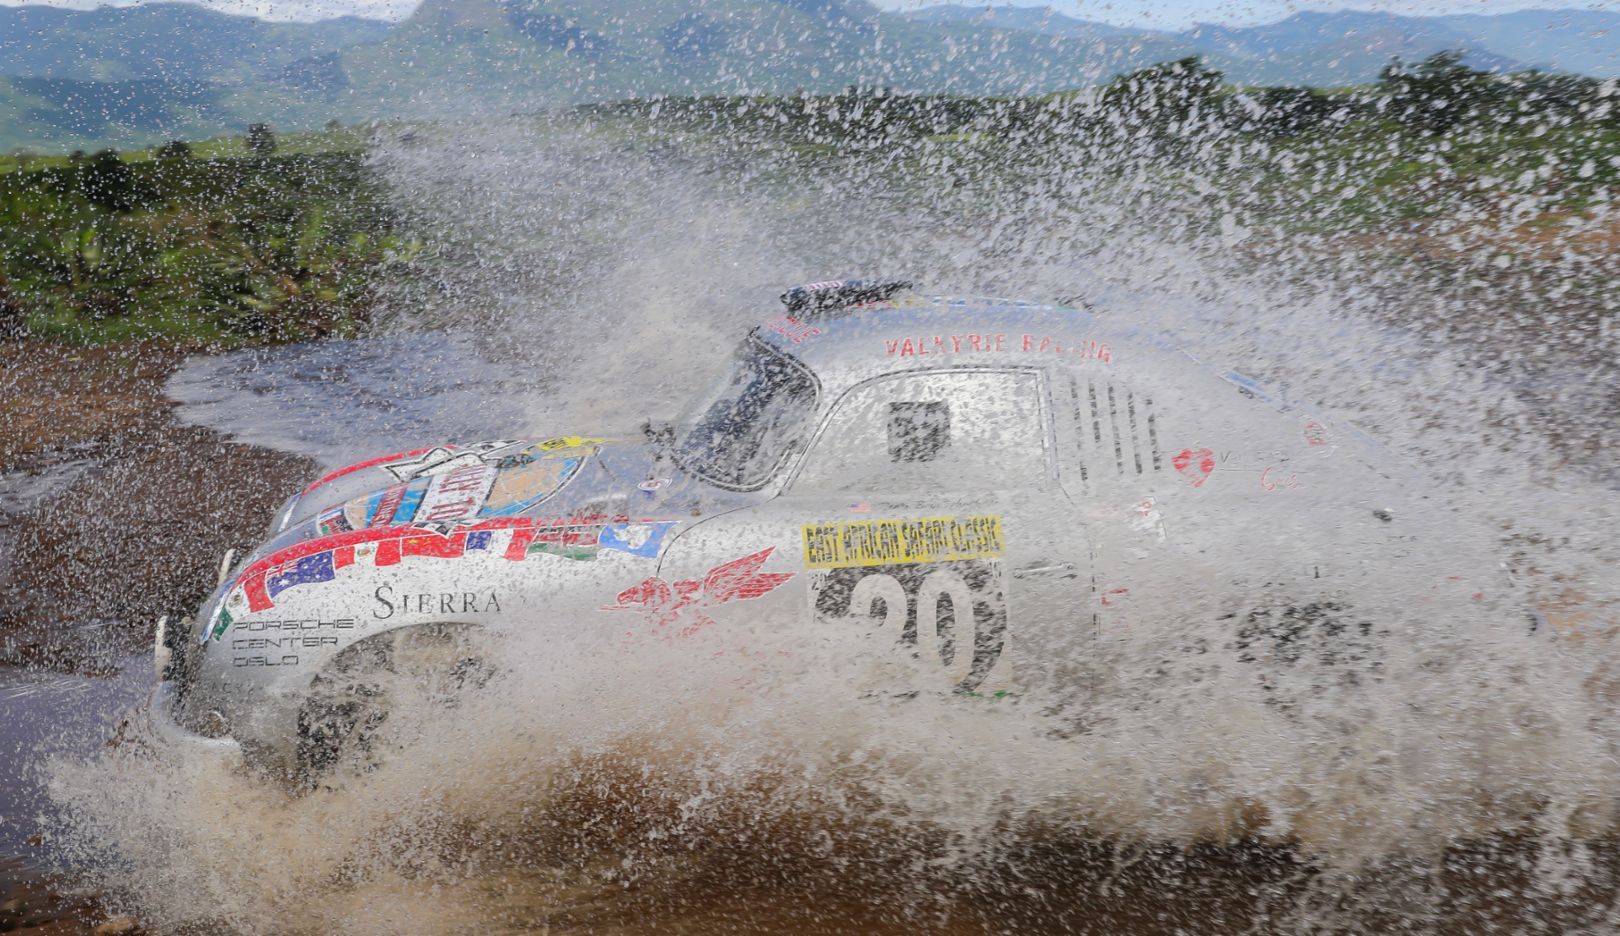 Das Wetter in Kenia und Tansania prägte die East African Safari Classic Rallye durch heftige Regenfälle.